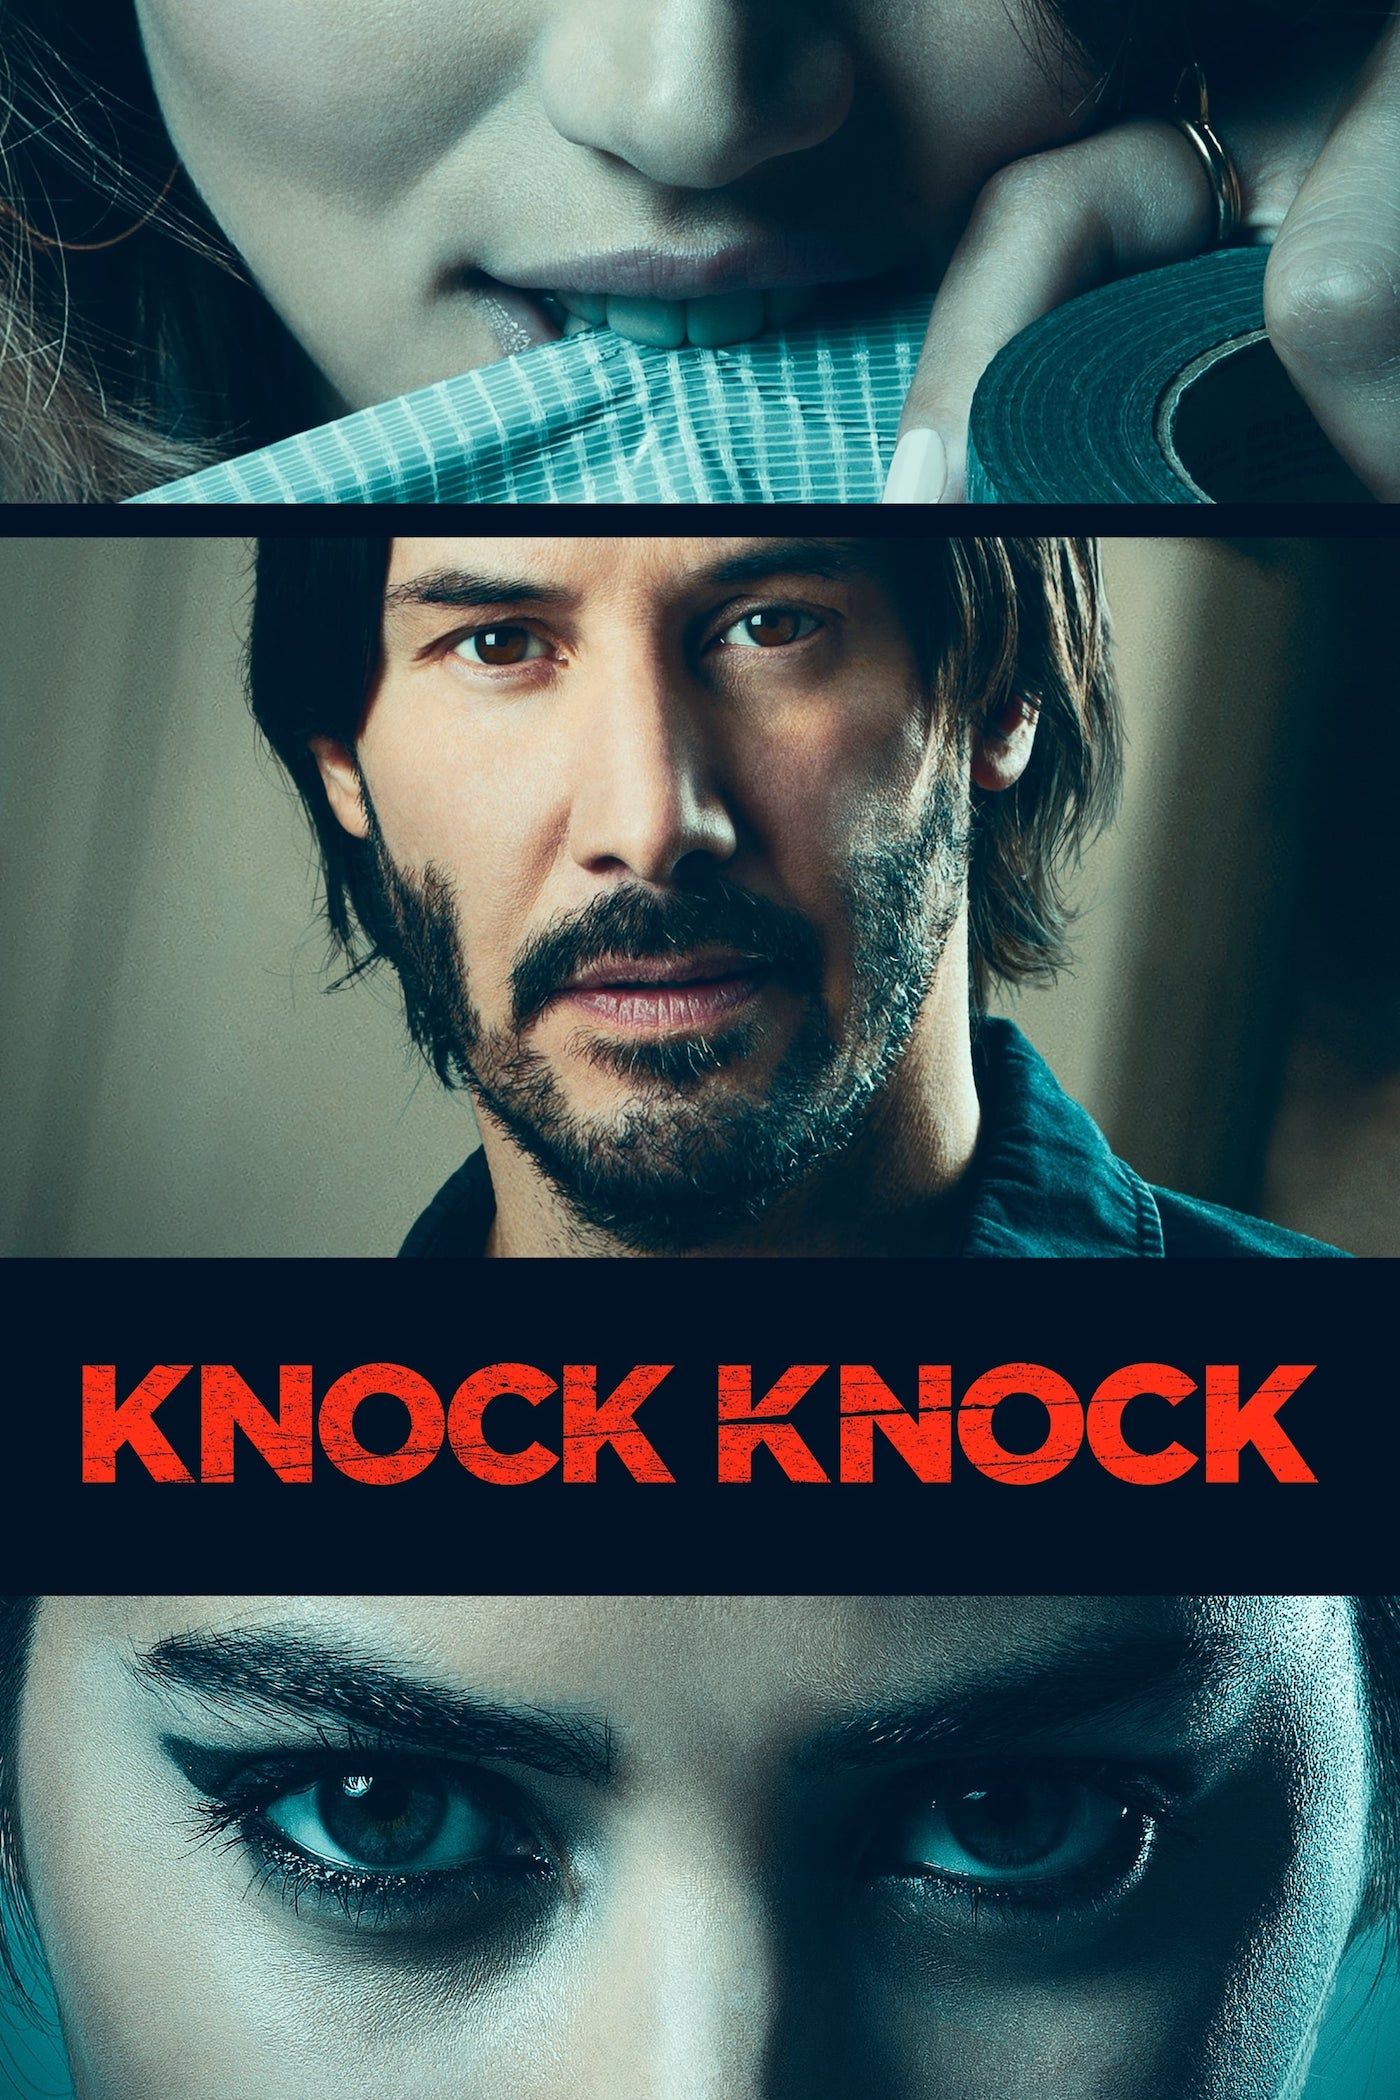 Knock Knock Movie Poster